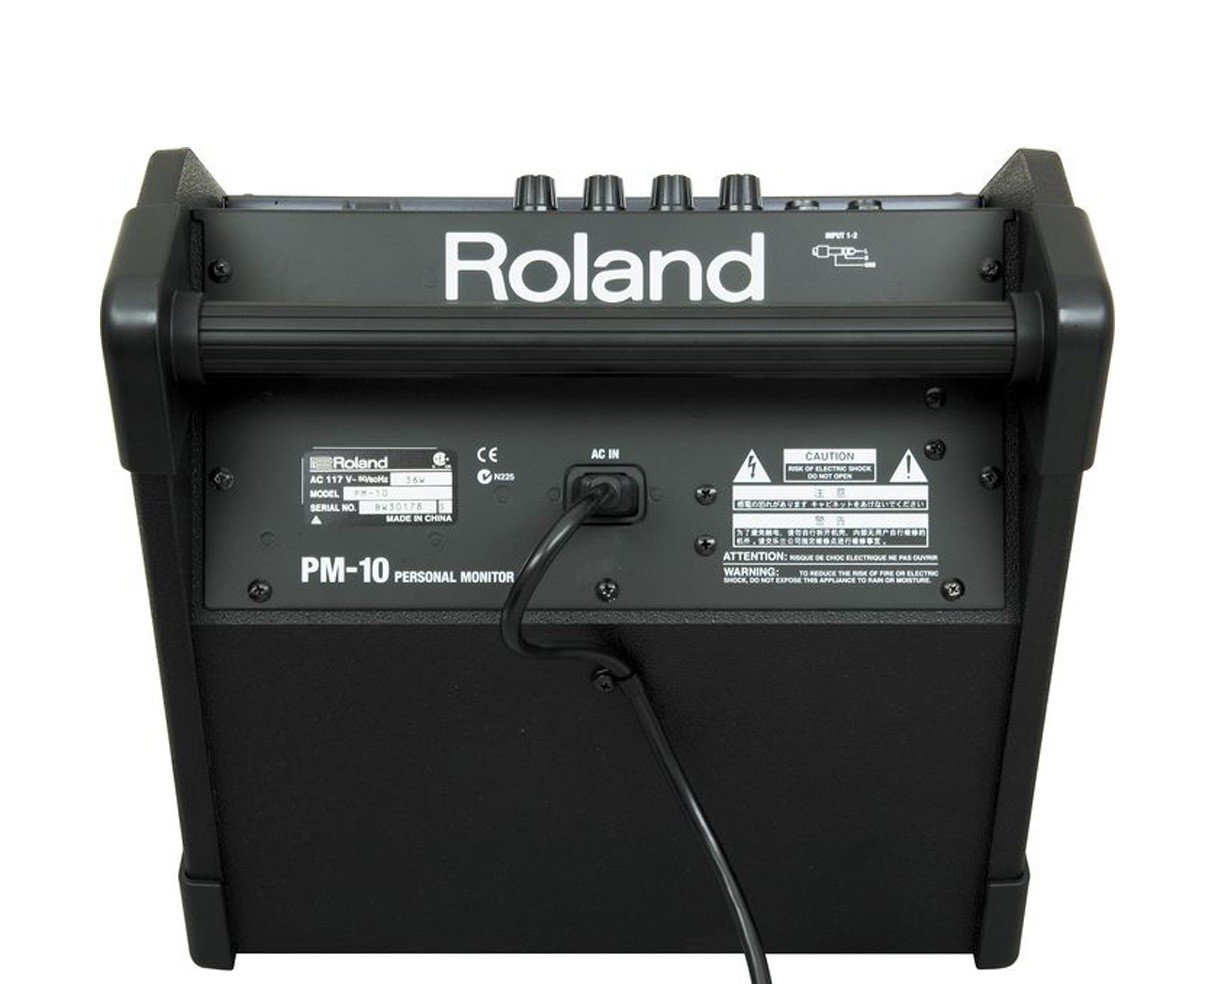    Roland PM-10